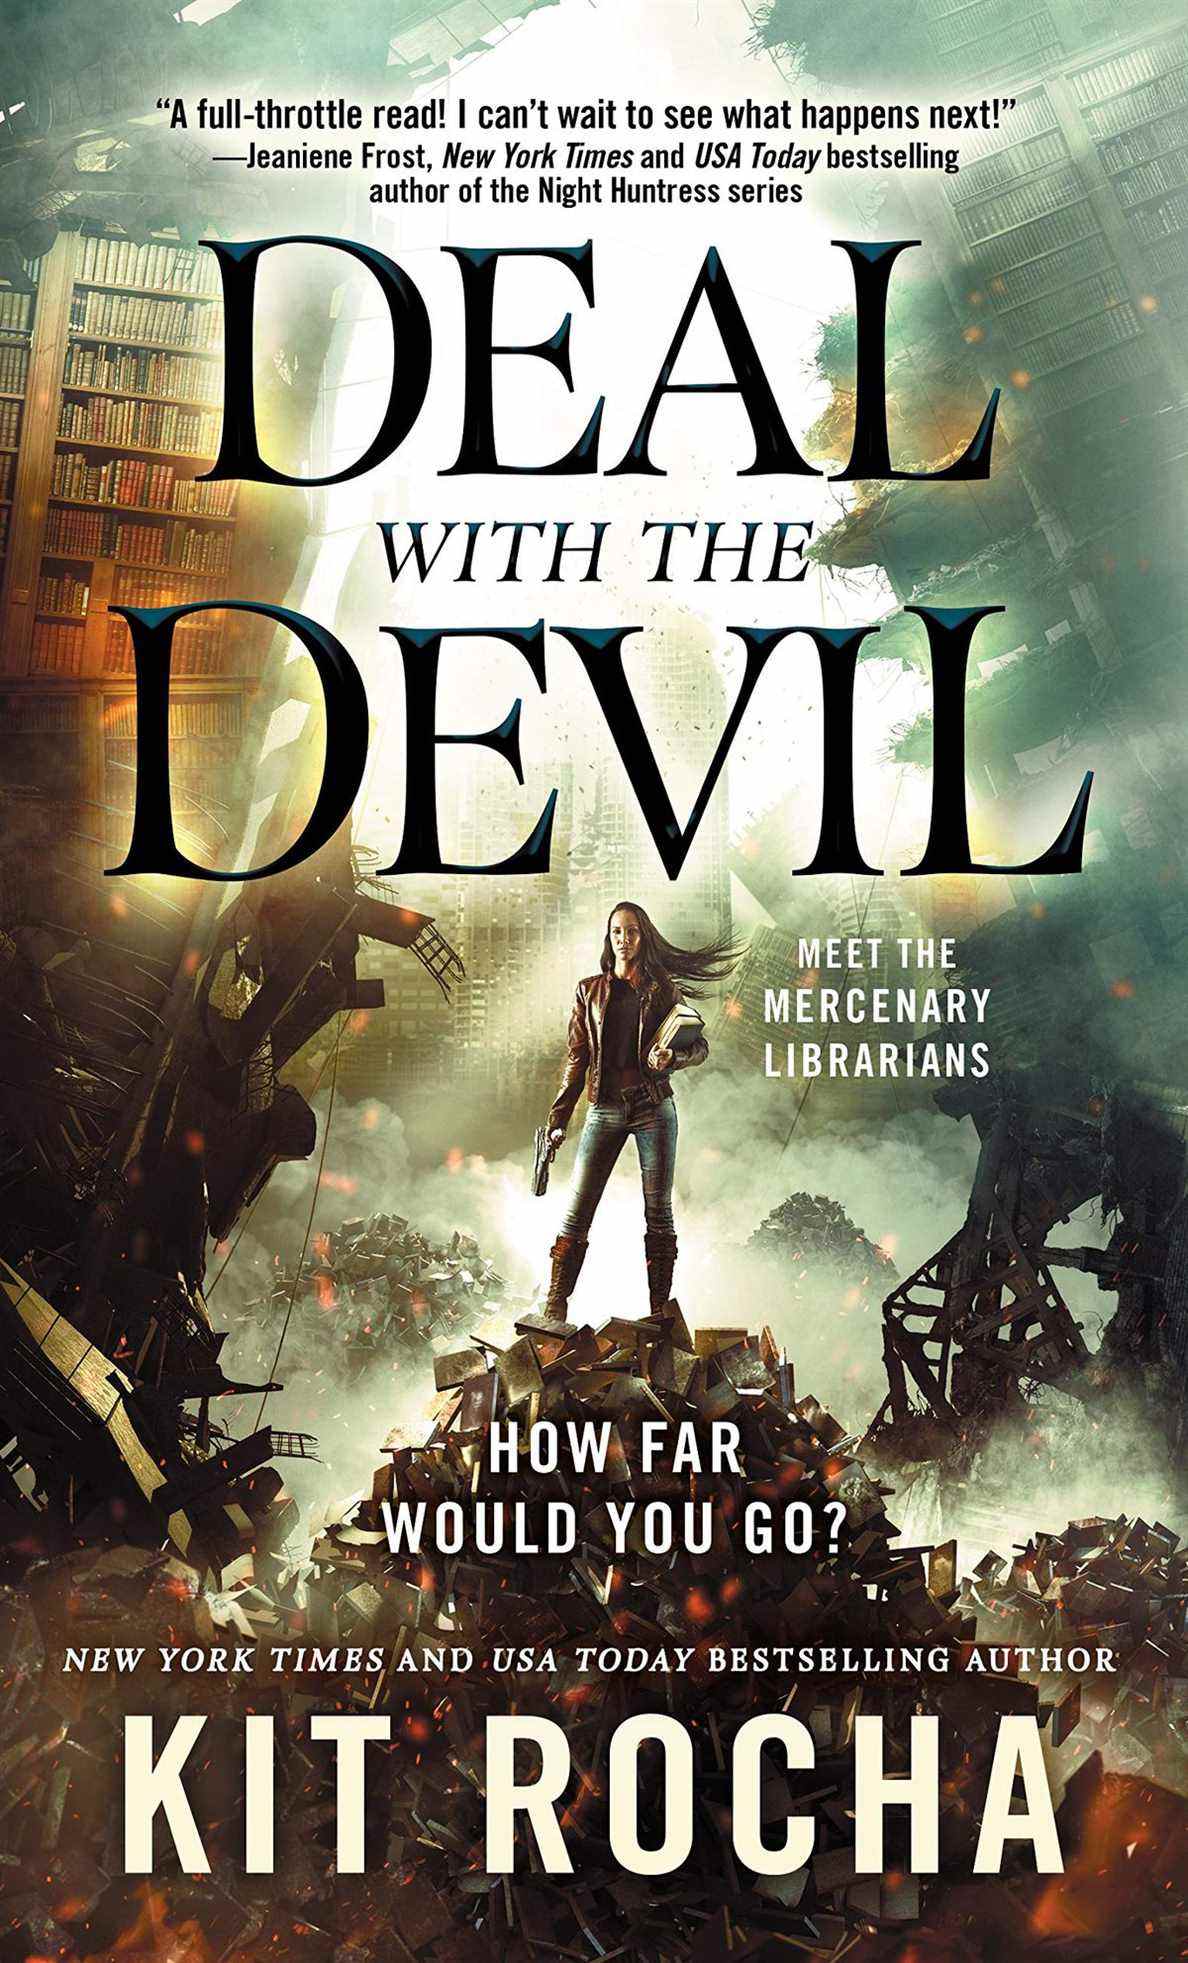 Couverture de Deal with the Devil , avec une femme debout sur une pile de livres contre un paysage détruit